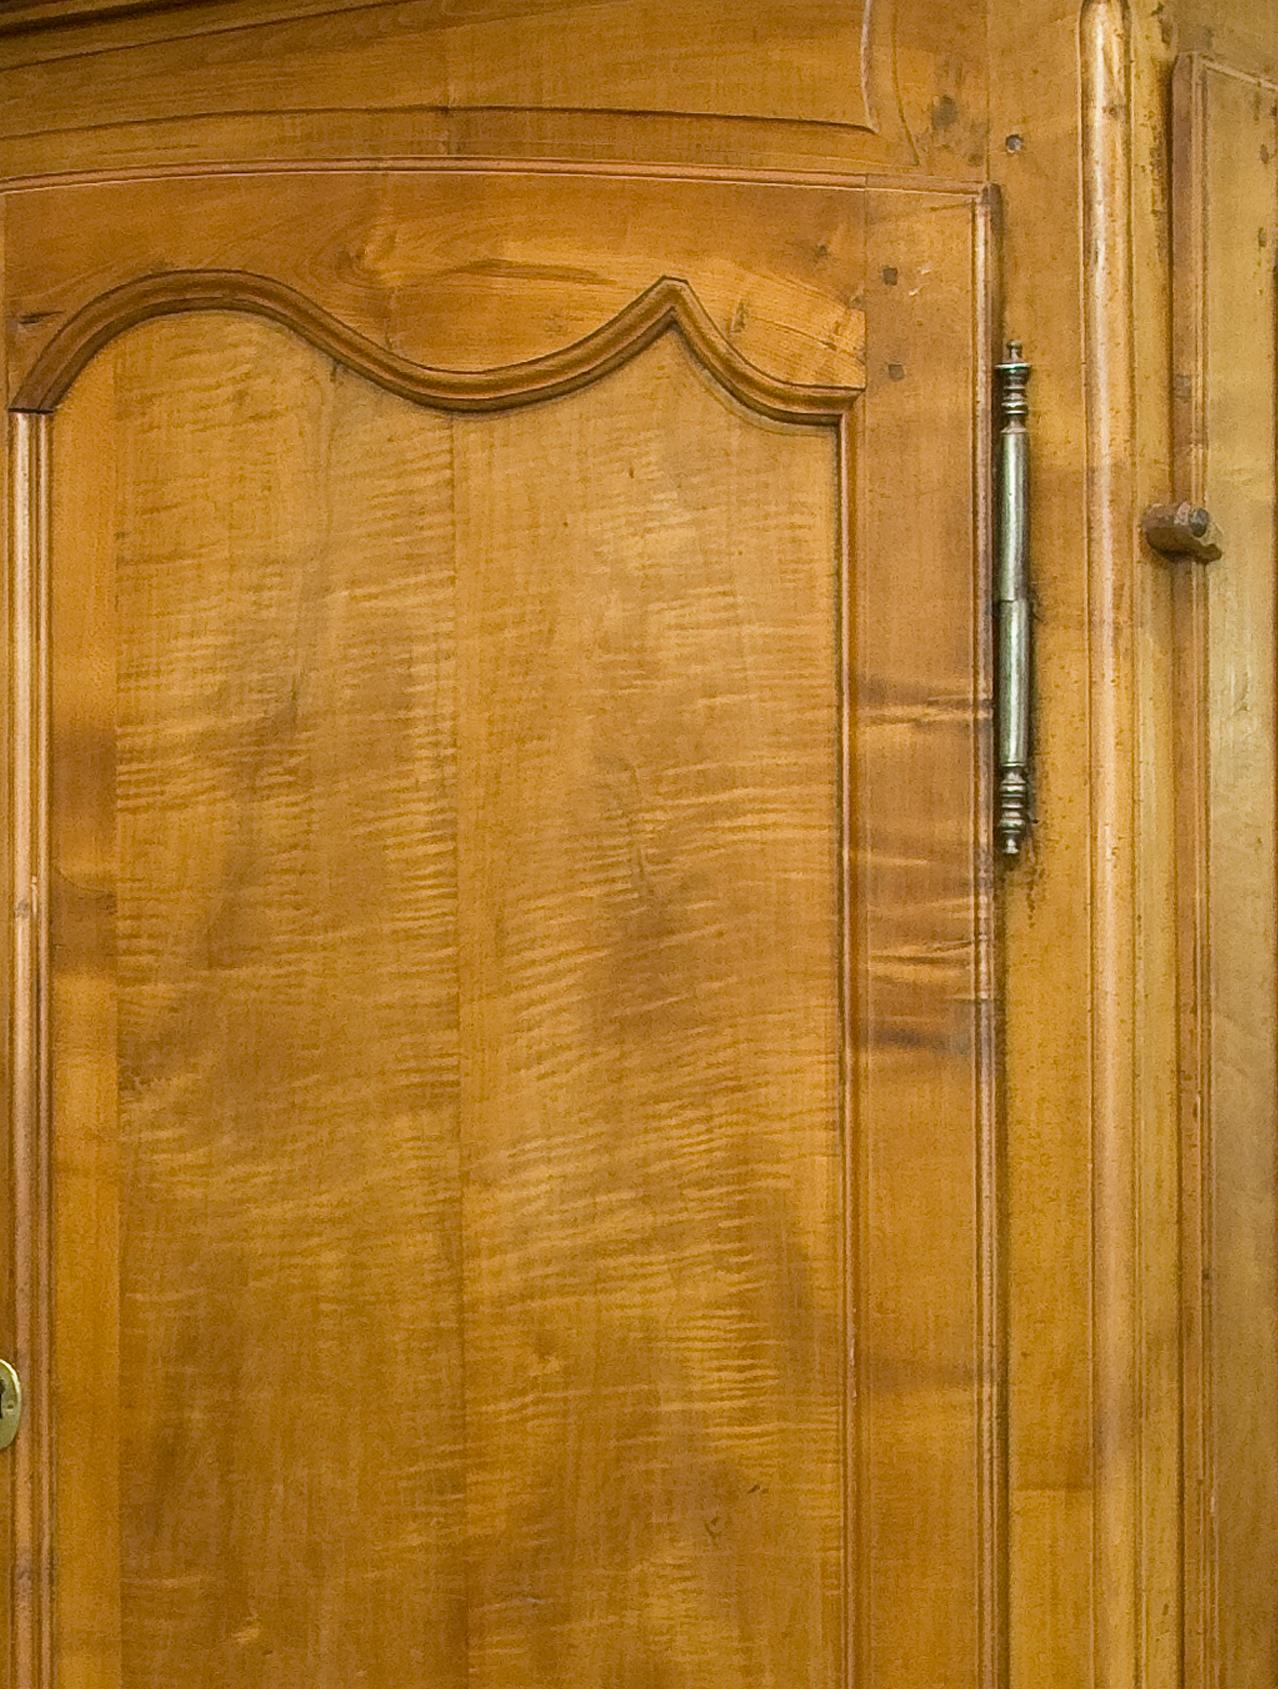 Garde-robe avec armurier. Cerisier et chêne. France, 18e siècle.
Armoire à deux portes avec trois tiroirs en bas, tous ces éléments avec une serrure à clé, qui possède également un compartiment sur un côté pour ranger les armes à feu. Dans la